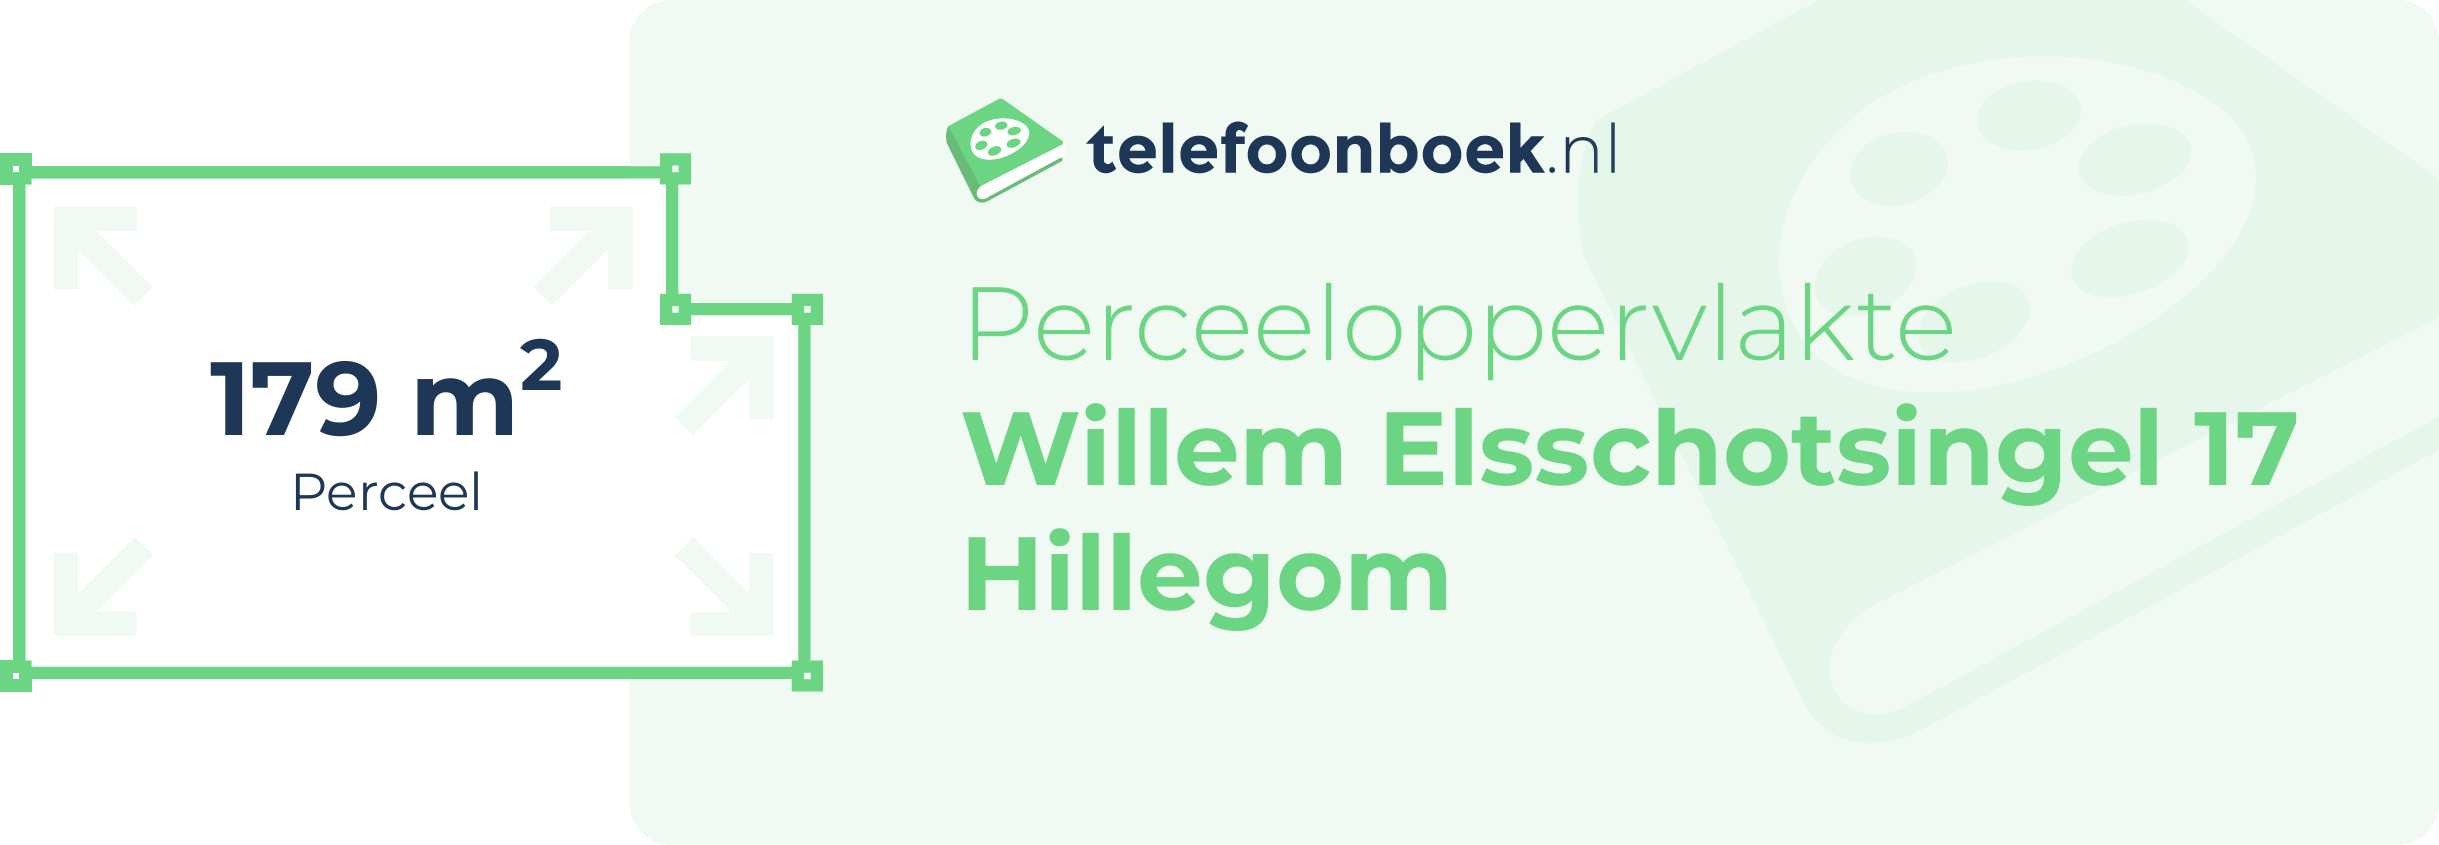 Perceeloppervlakte Willem Elsschotsingel 17 Hillegom